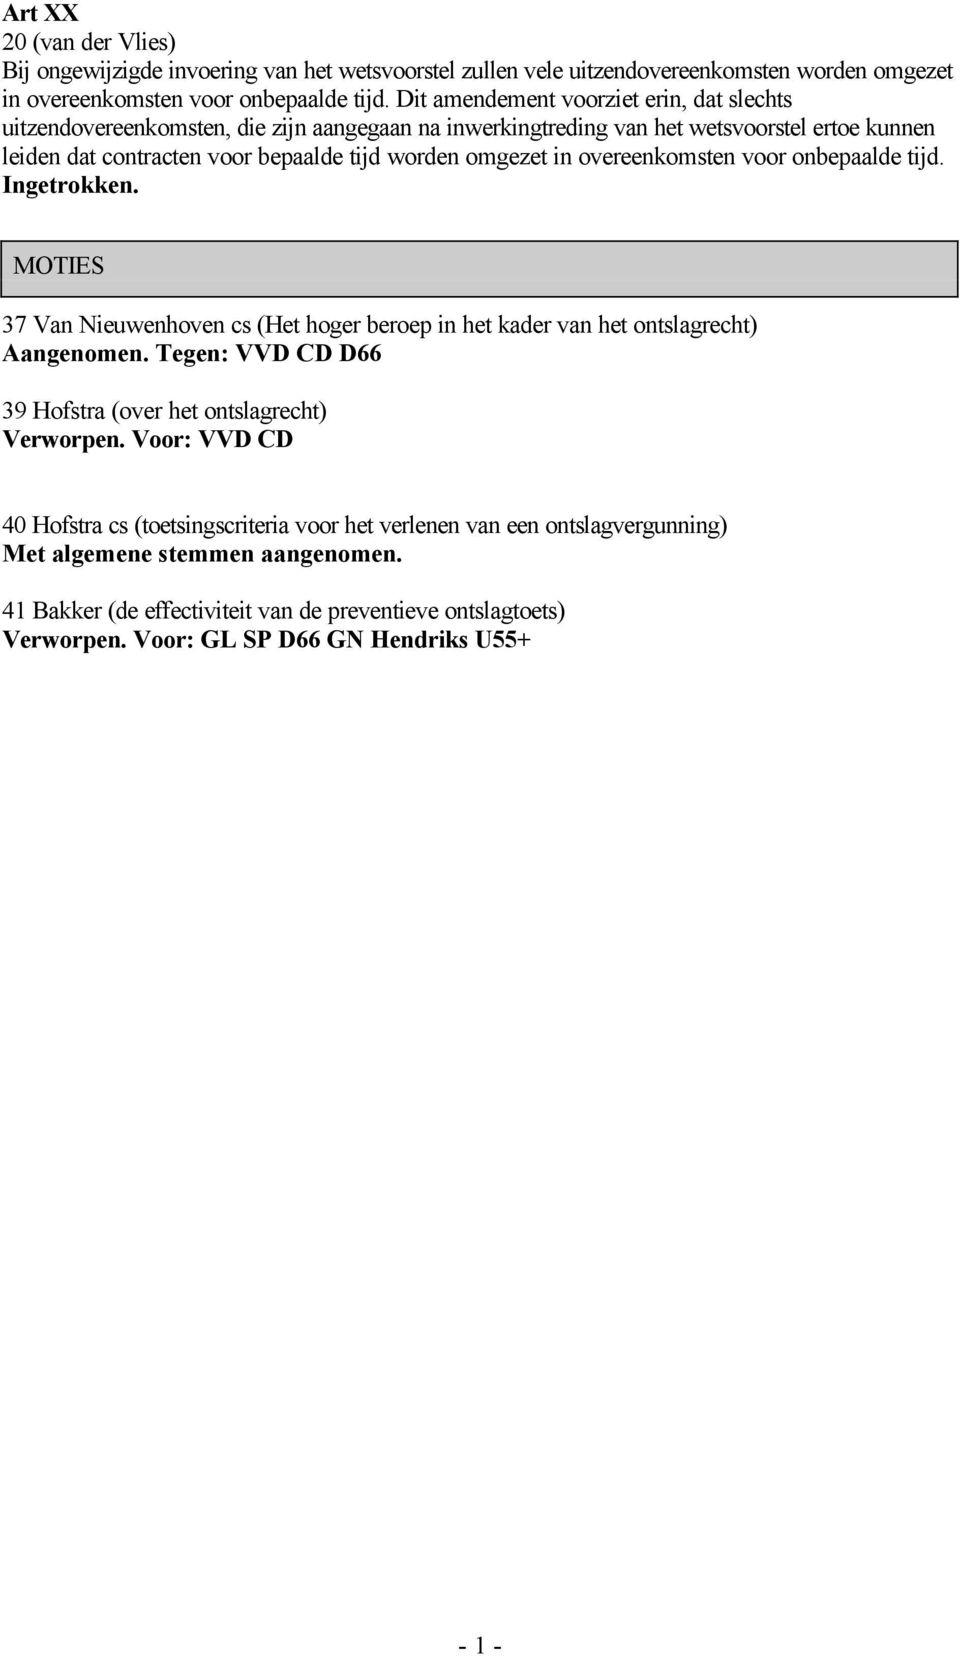 in overeenkomsten voor onbepaalde tijd. Ingetrokken. MOTIES 37 Van Nieuwenhoven cs (Het hoger beroep in het kader van het ontslagrecht) Aangenomen.